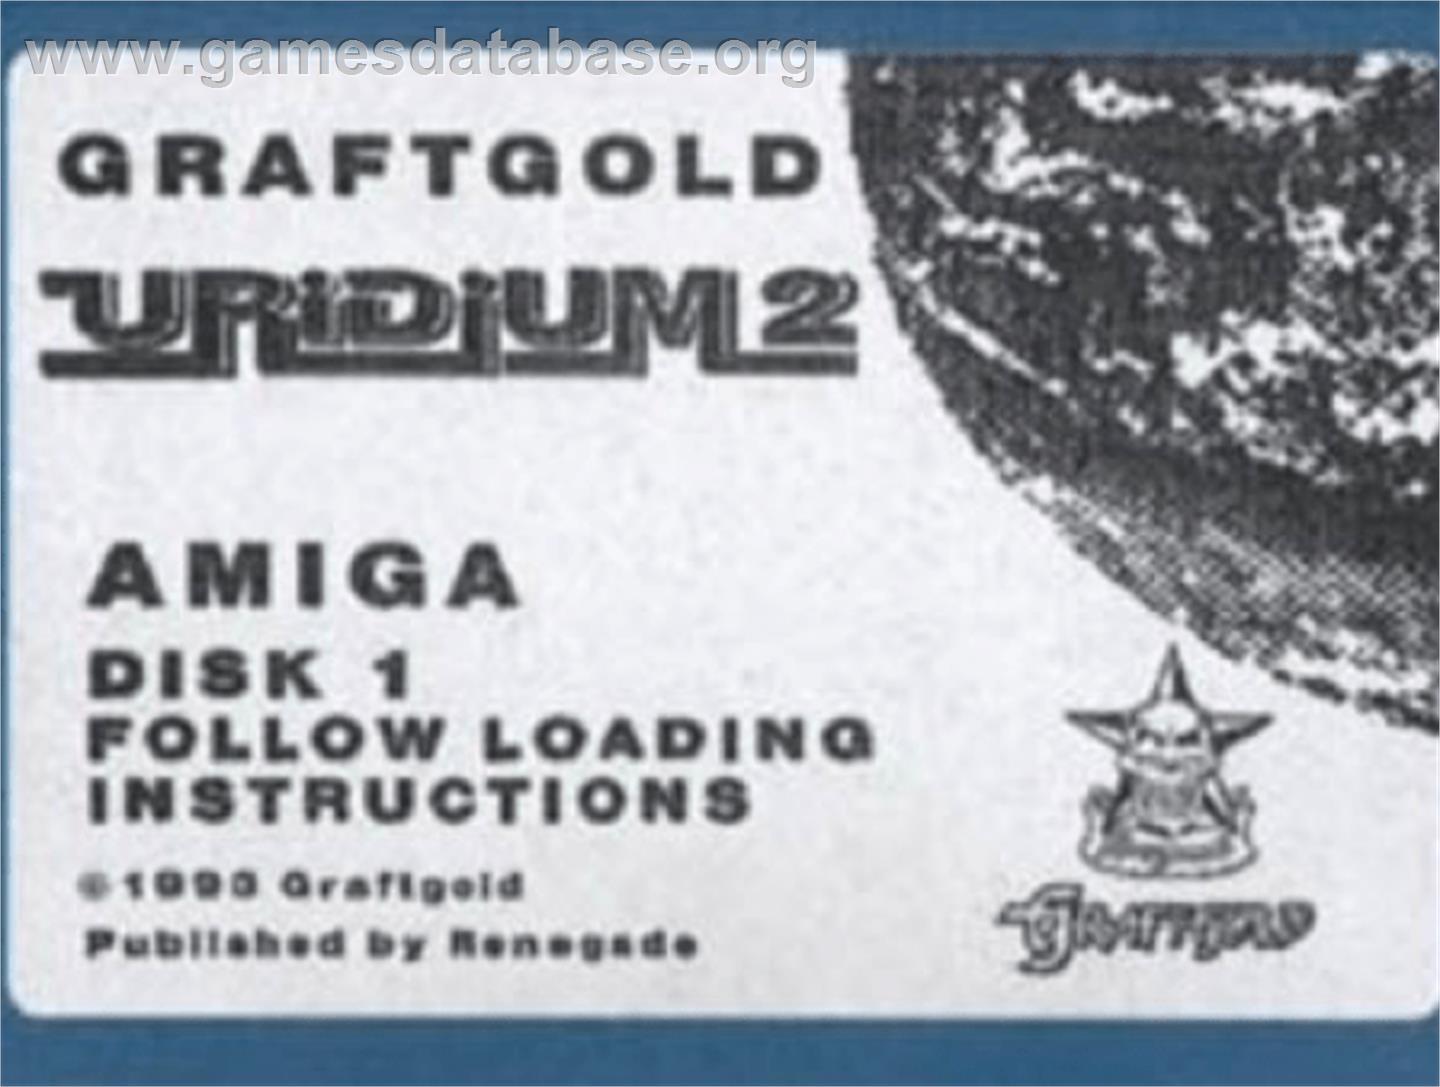 Uridium 2 - Commodore Amiga - Artwork - Cartridge Top